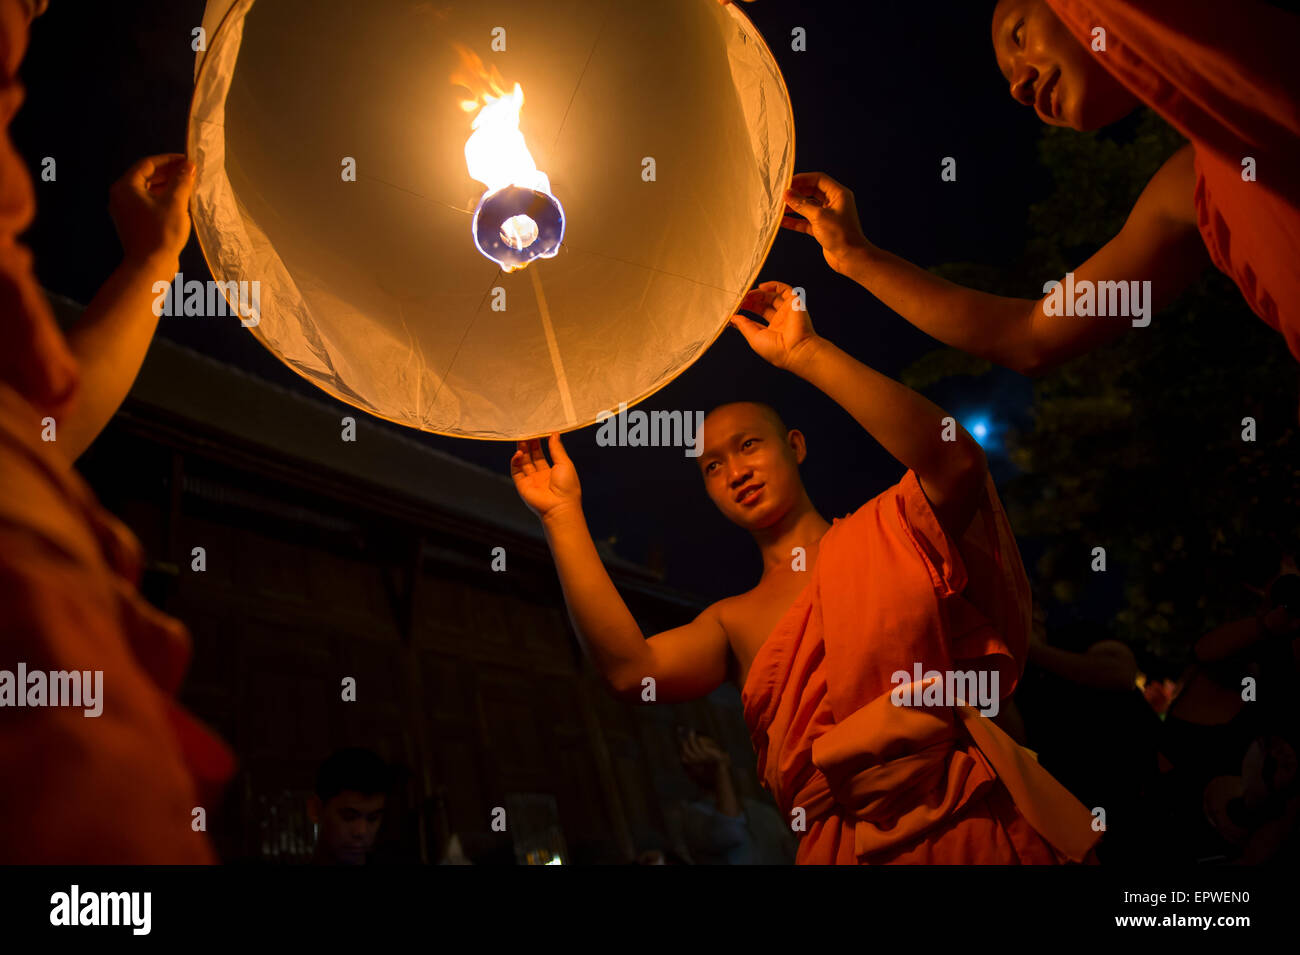 CHIANG MAI, THAÏLANDE - 07 NOVEMBRE 2014 : Groupe de moines bouddhistes lancer sky lanternes lors de l'Assemblée Yee Peng festival des lumières Banque D'Images